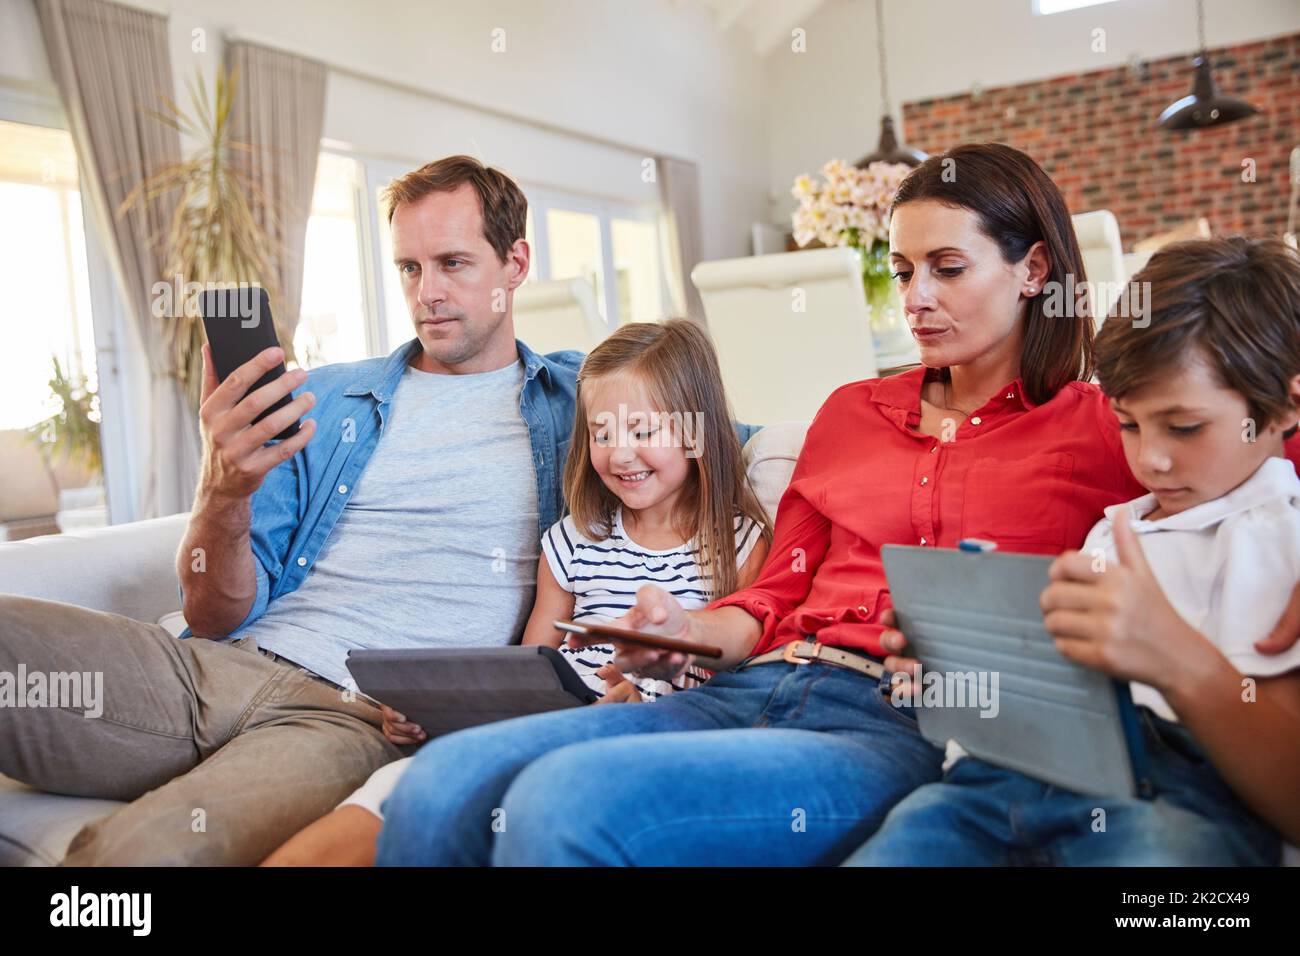 Distractions numériques. Photo d'une jeune famille assise sur le canapé de son salon, distraite par divers médias et appareils. Banque D'Images